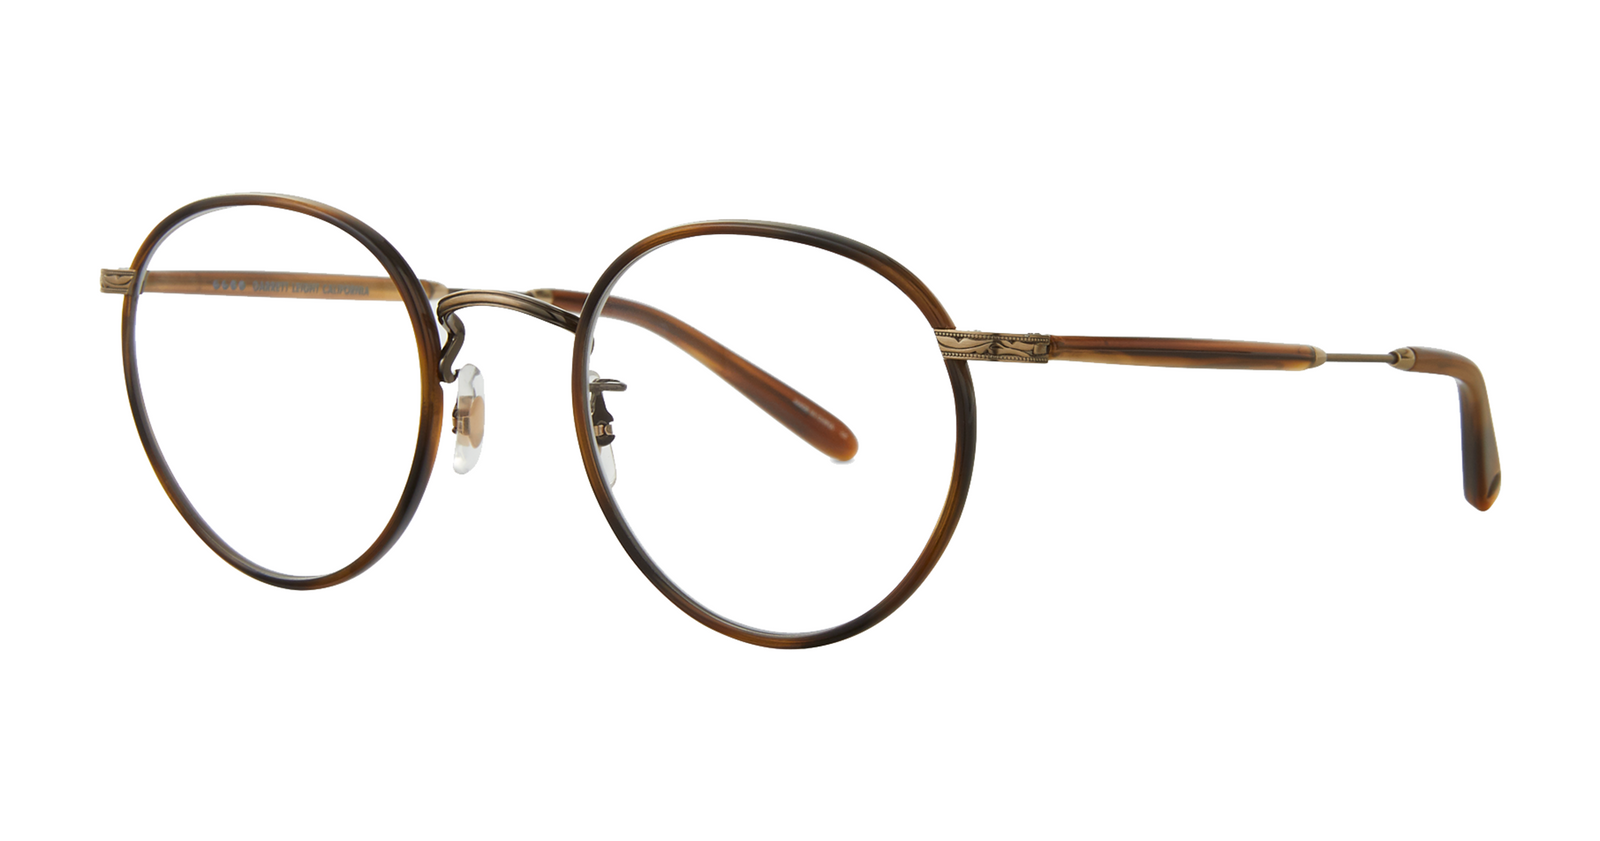 Wilson Round Eyeglasses - Inspired by John Lennon – Garrett Leight